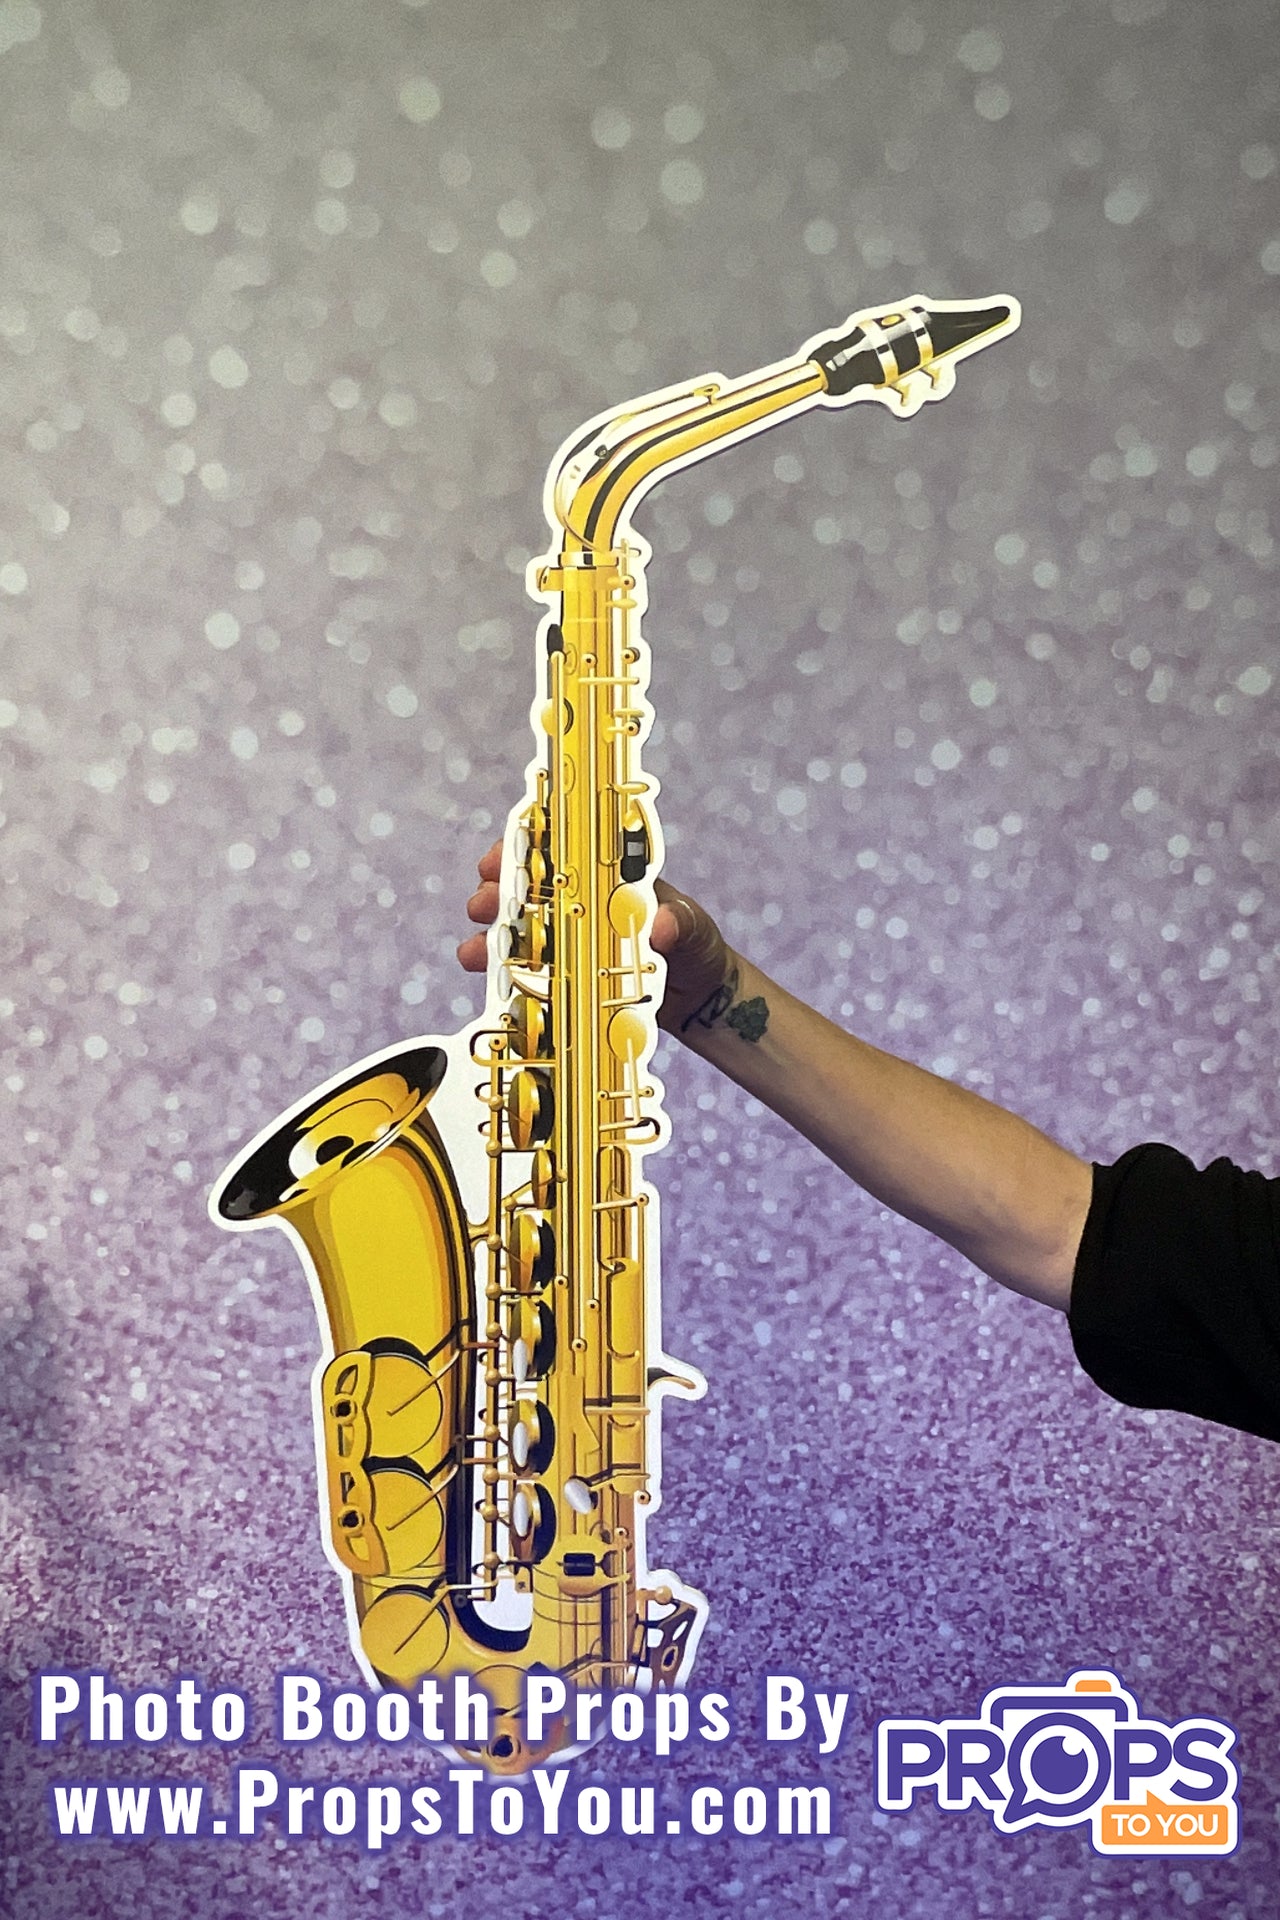 BIG PROP: Saxophone